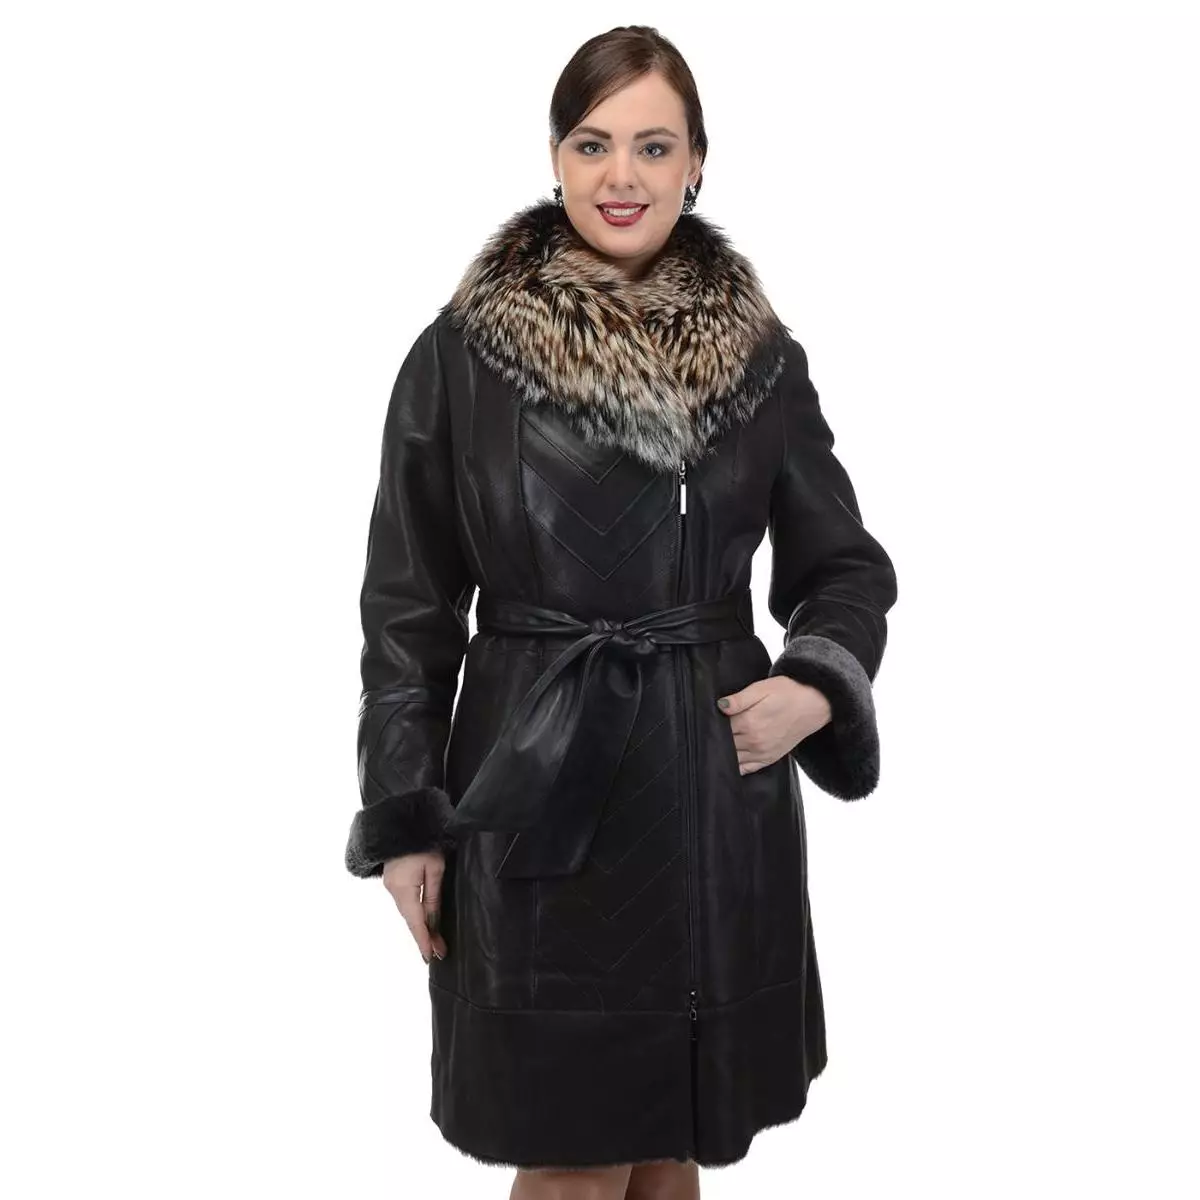 Calyaev's Coat (50 fotos): models de dona de Fur Factory Kalyaev, crítiques 382_33